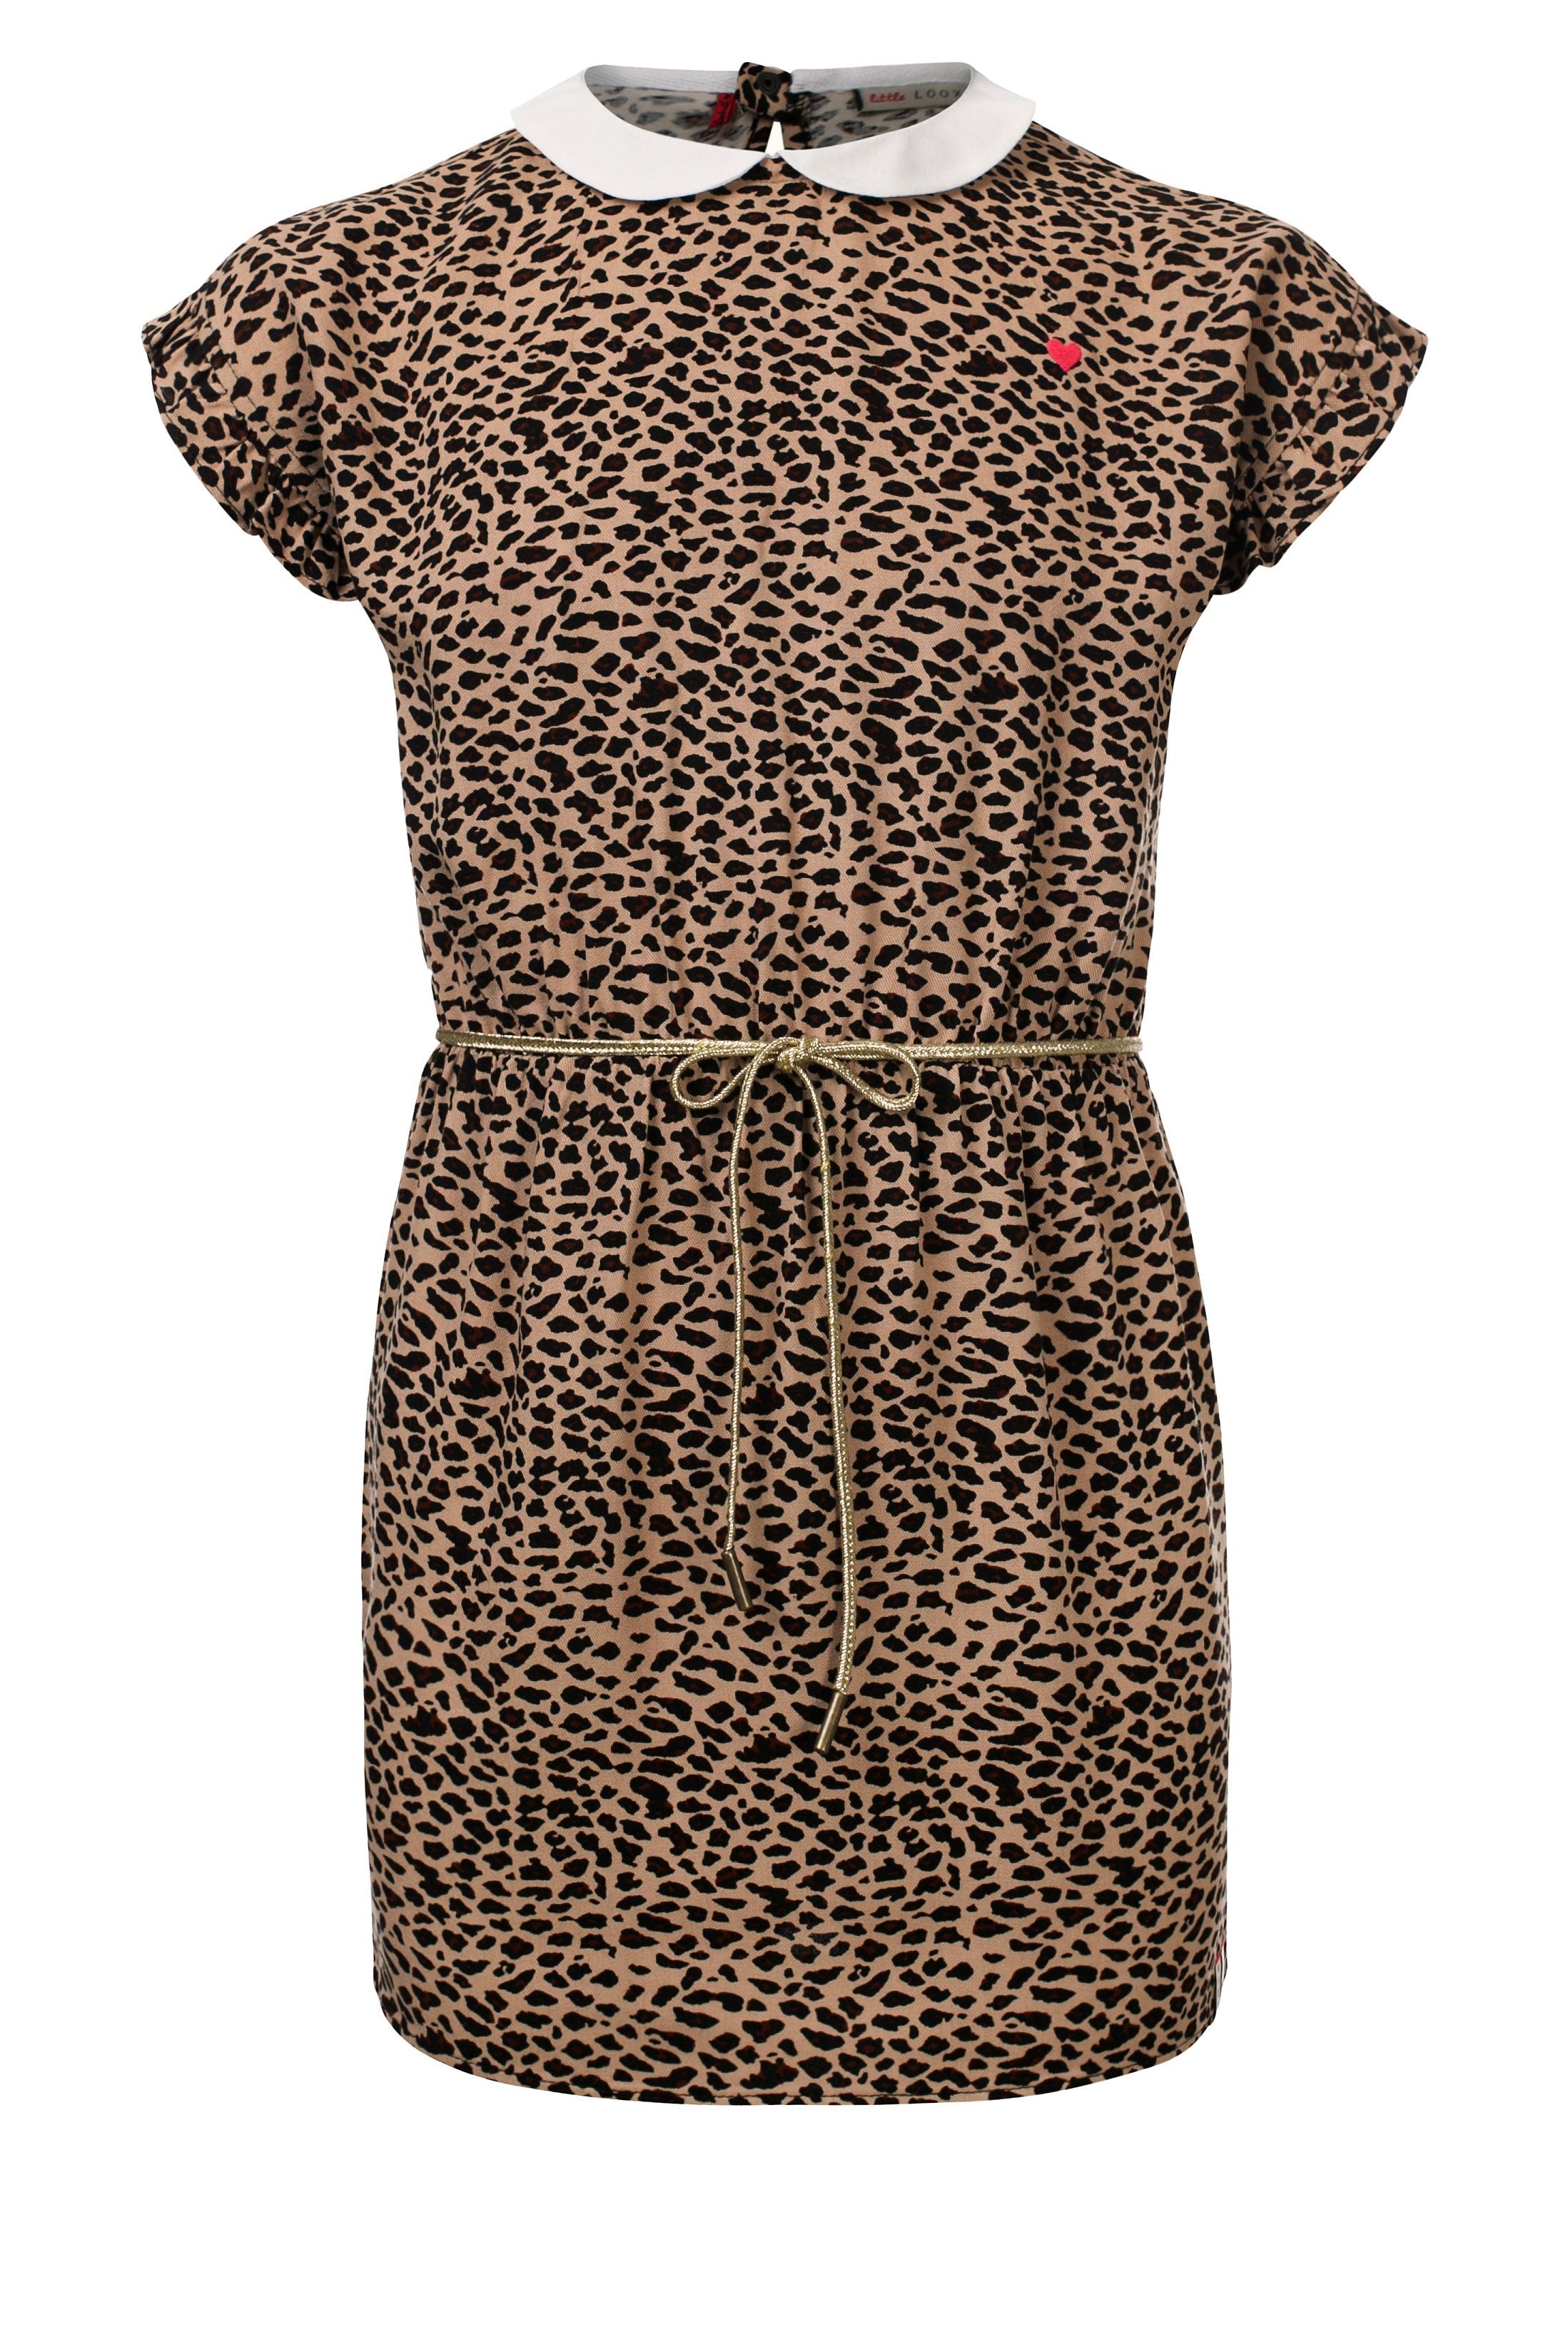 Meisjes Dress S.Sleeve van Little Looxs in de kleur Jaguar in maat 128.